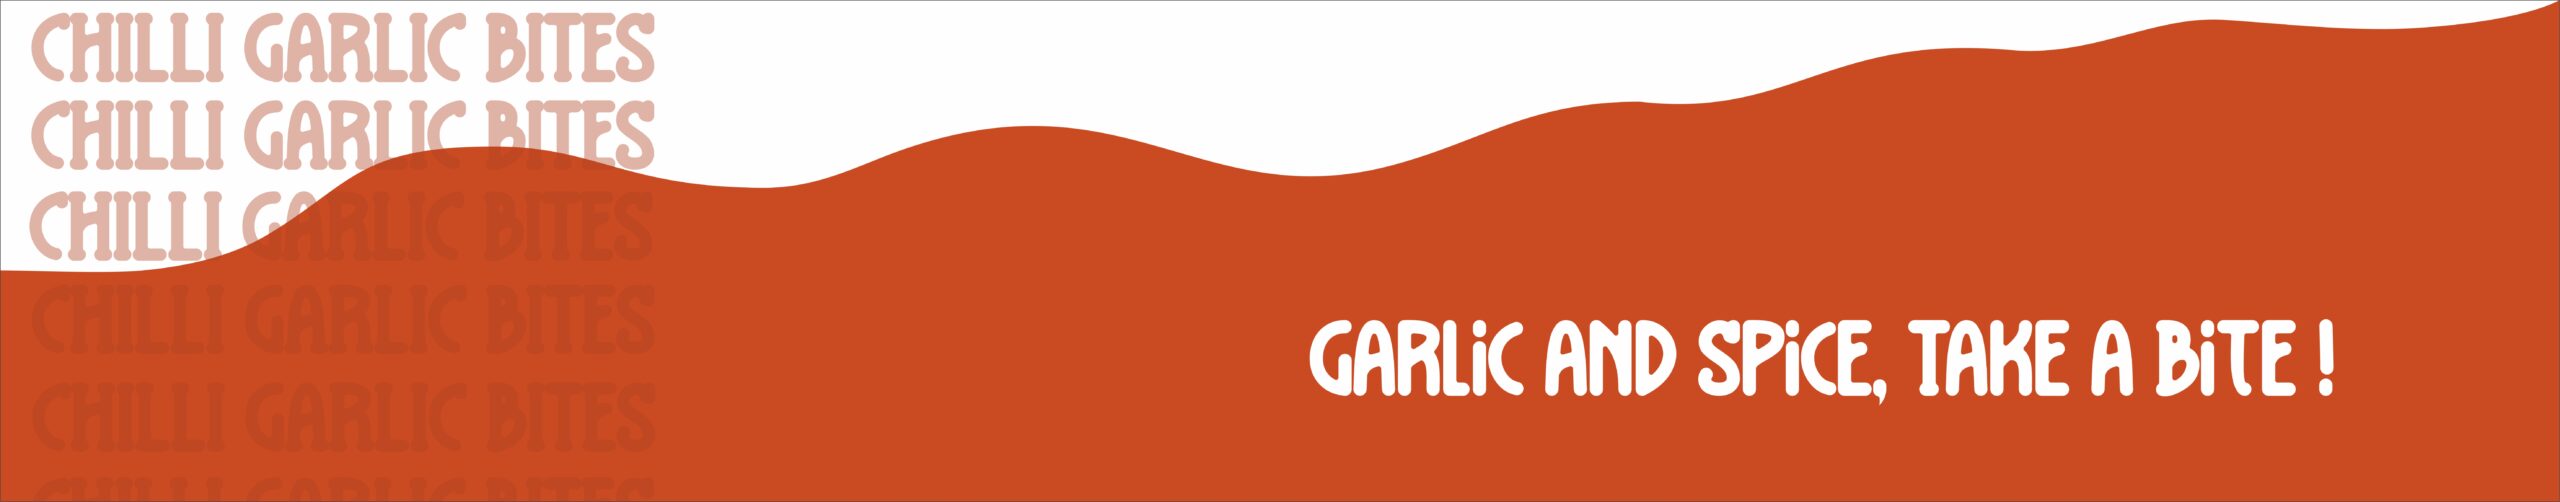 chilli garlic bites